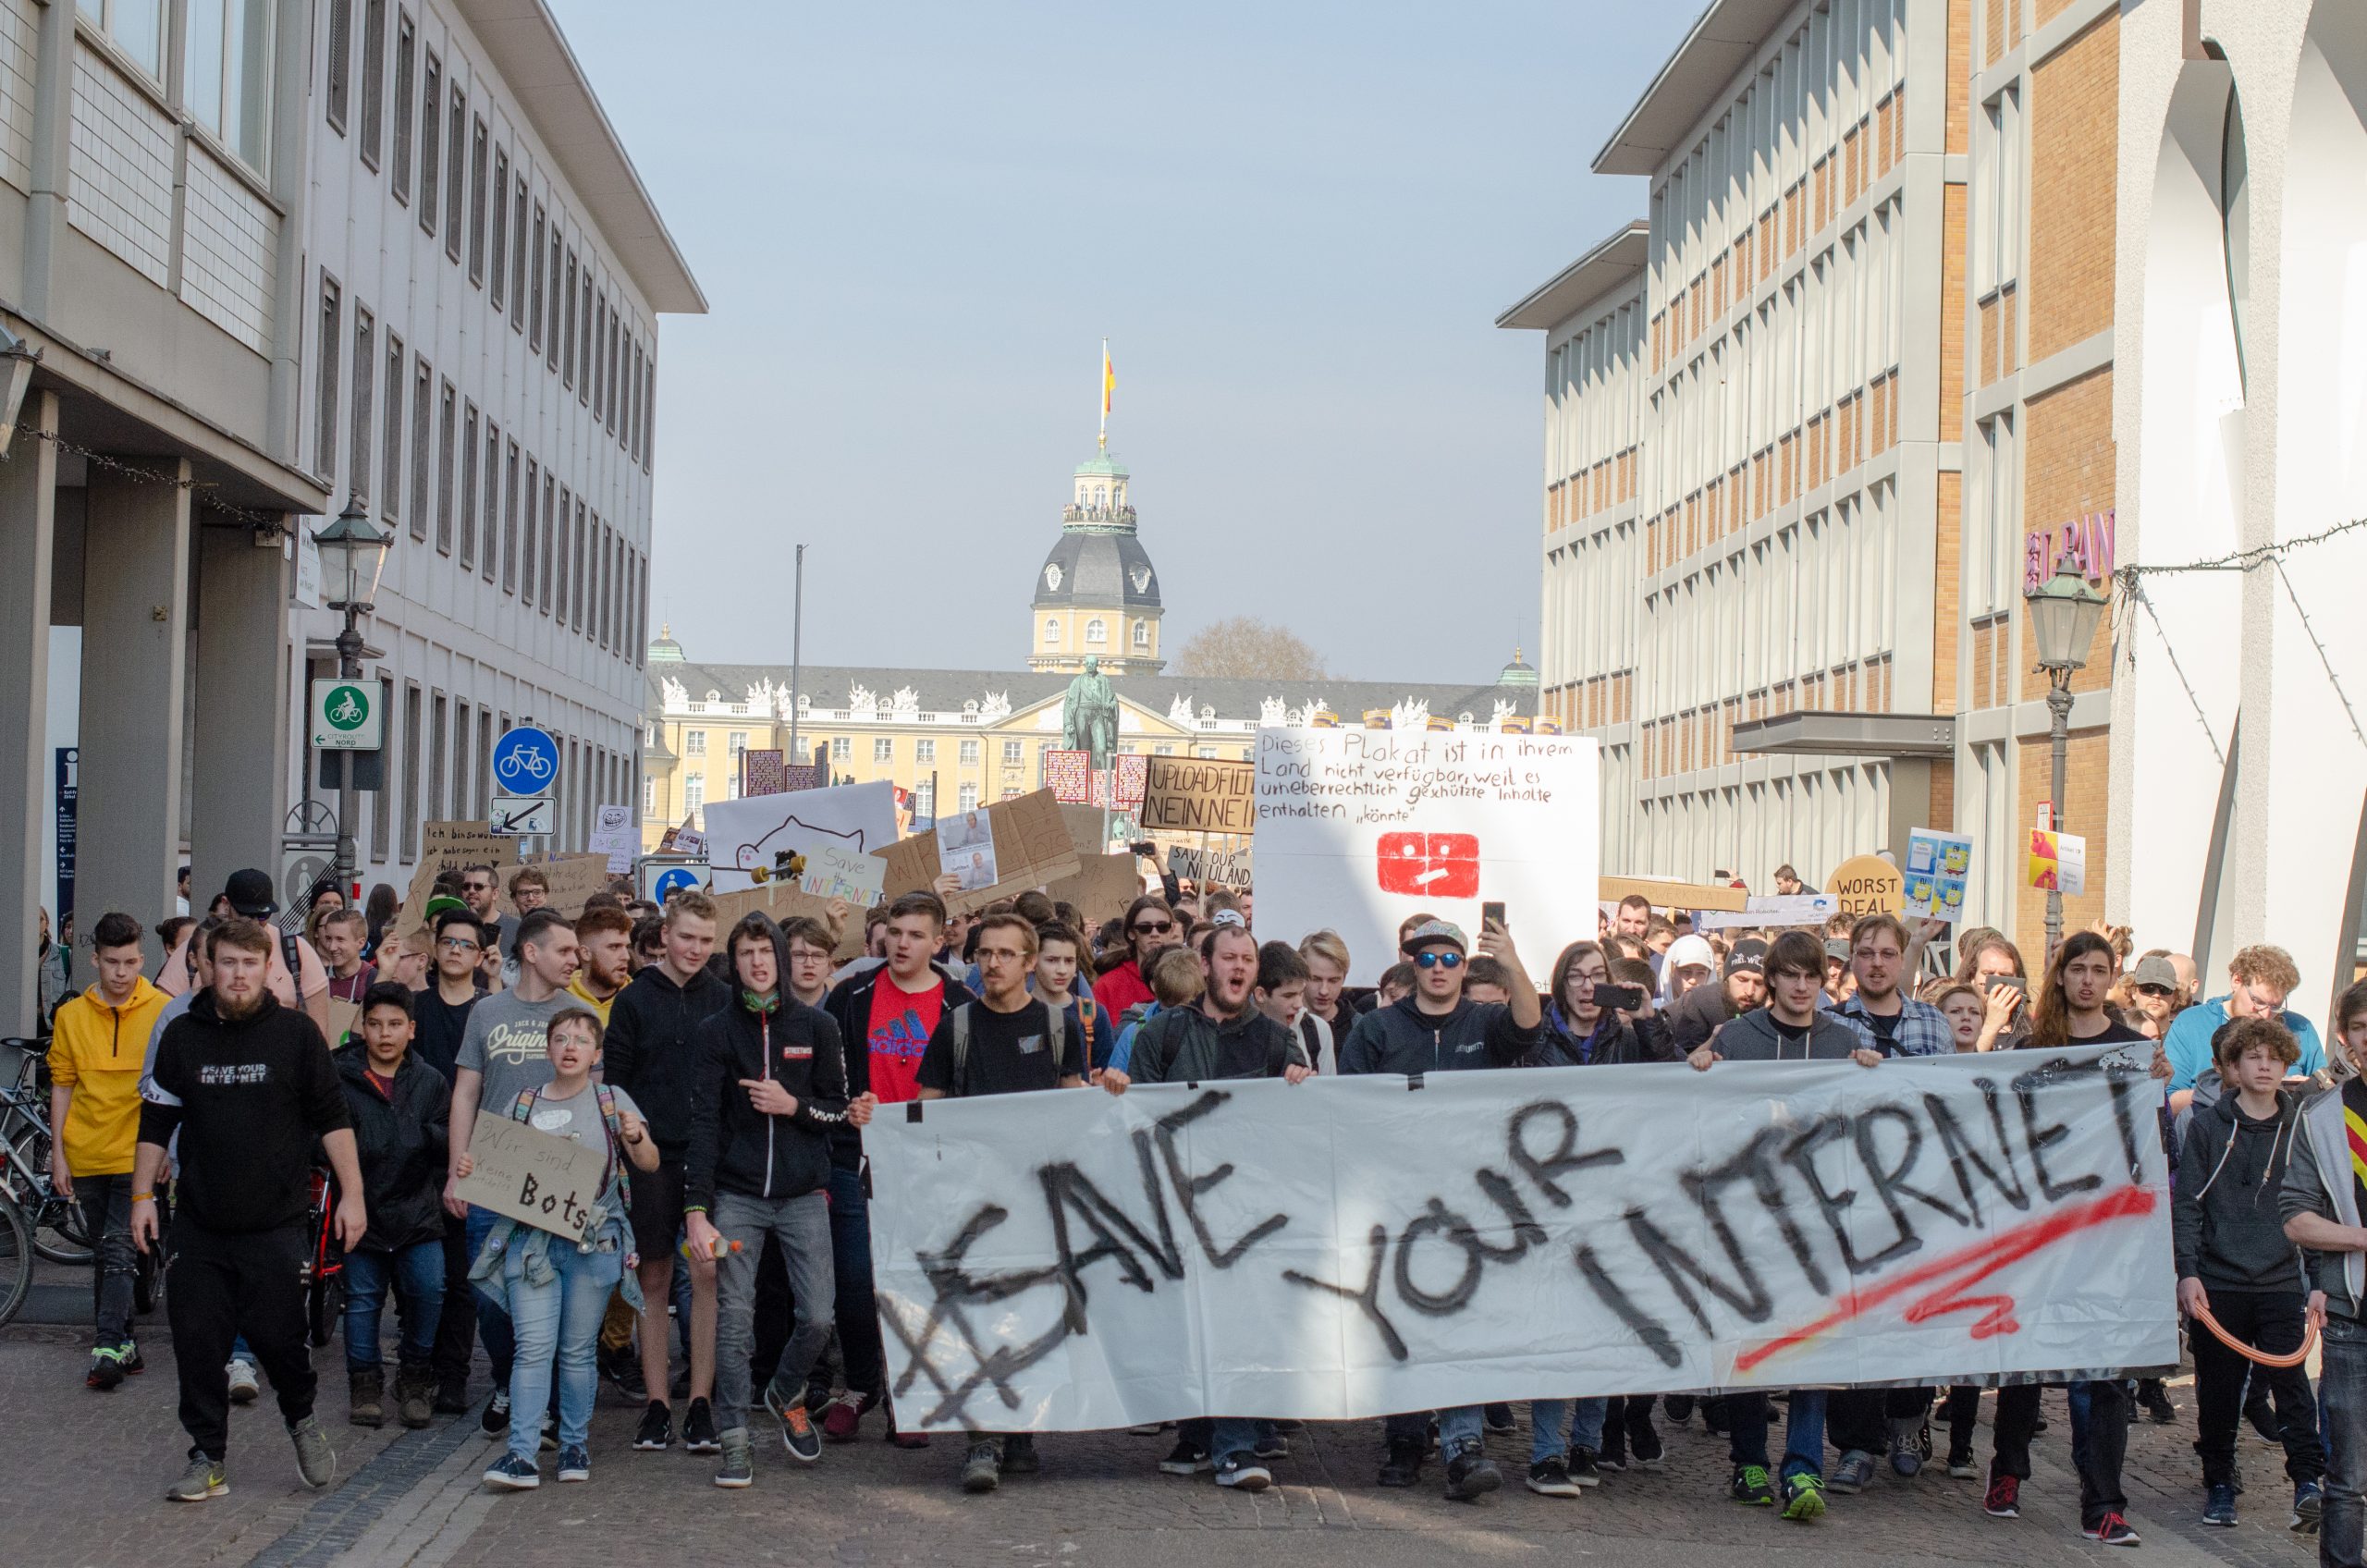 Az igazságos internetet tűzte zászlajára, de a szabad internet halálát okozhatja az EU új szerzői jogi reformja